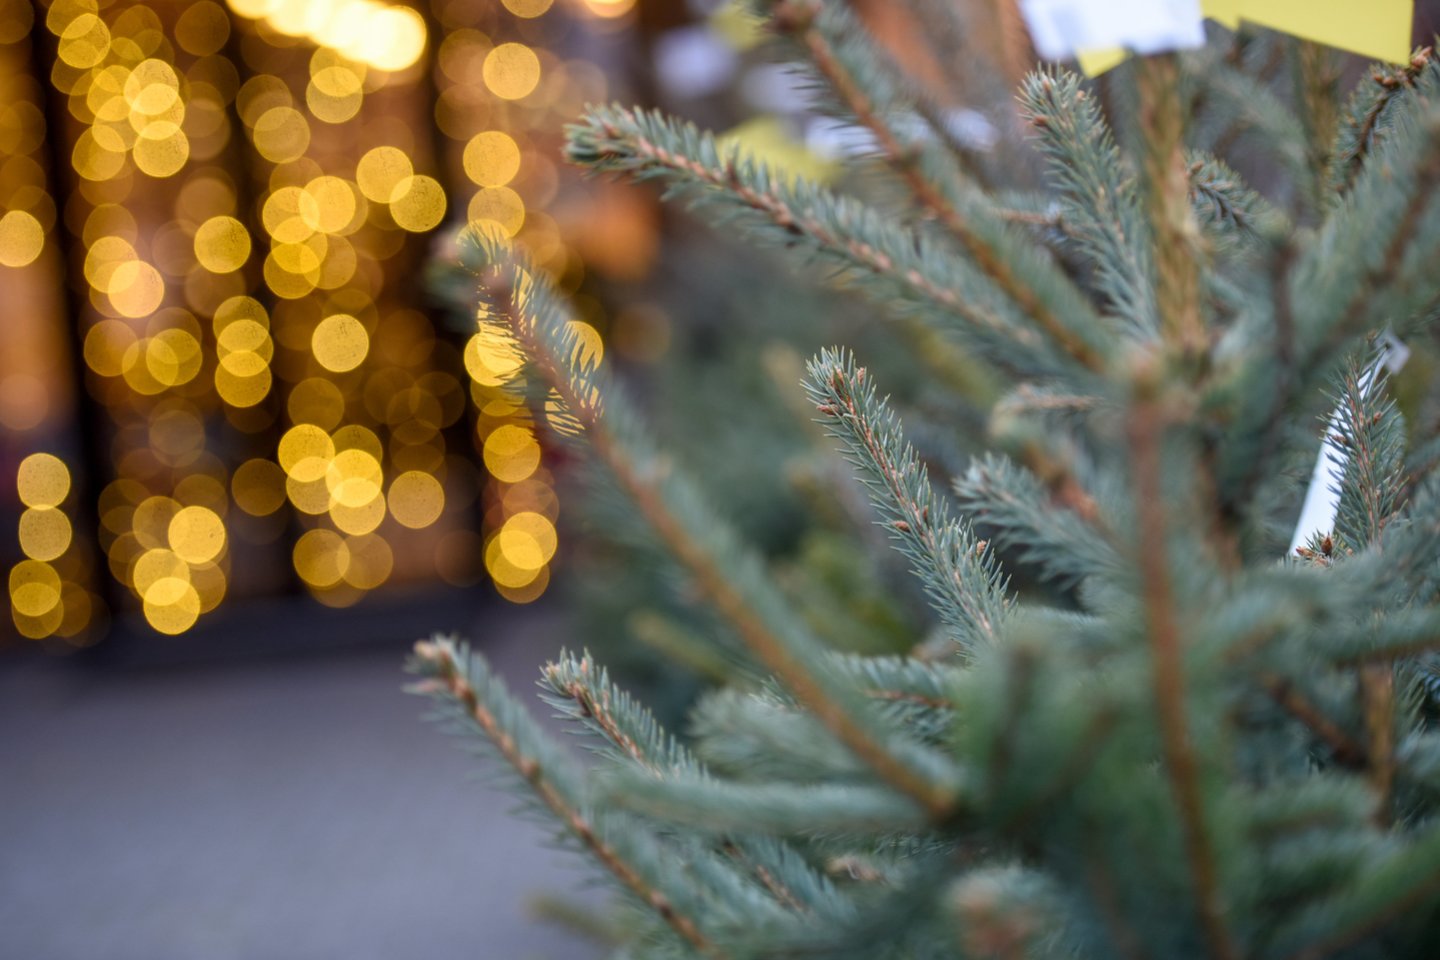 Prekybininkai pastebi, kad šįmet žmonės Kalėdoms ruošiasi gerokai iš anksto, todėl daugelio namuose jau suspindo Kalėdų žaliaskarės.<br>D.Umbraso nuotr.